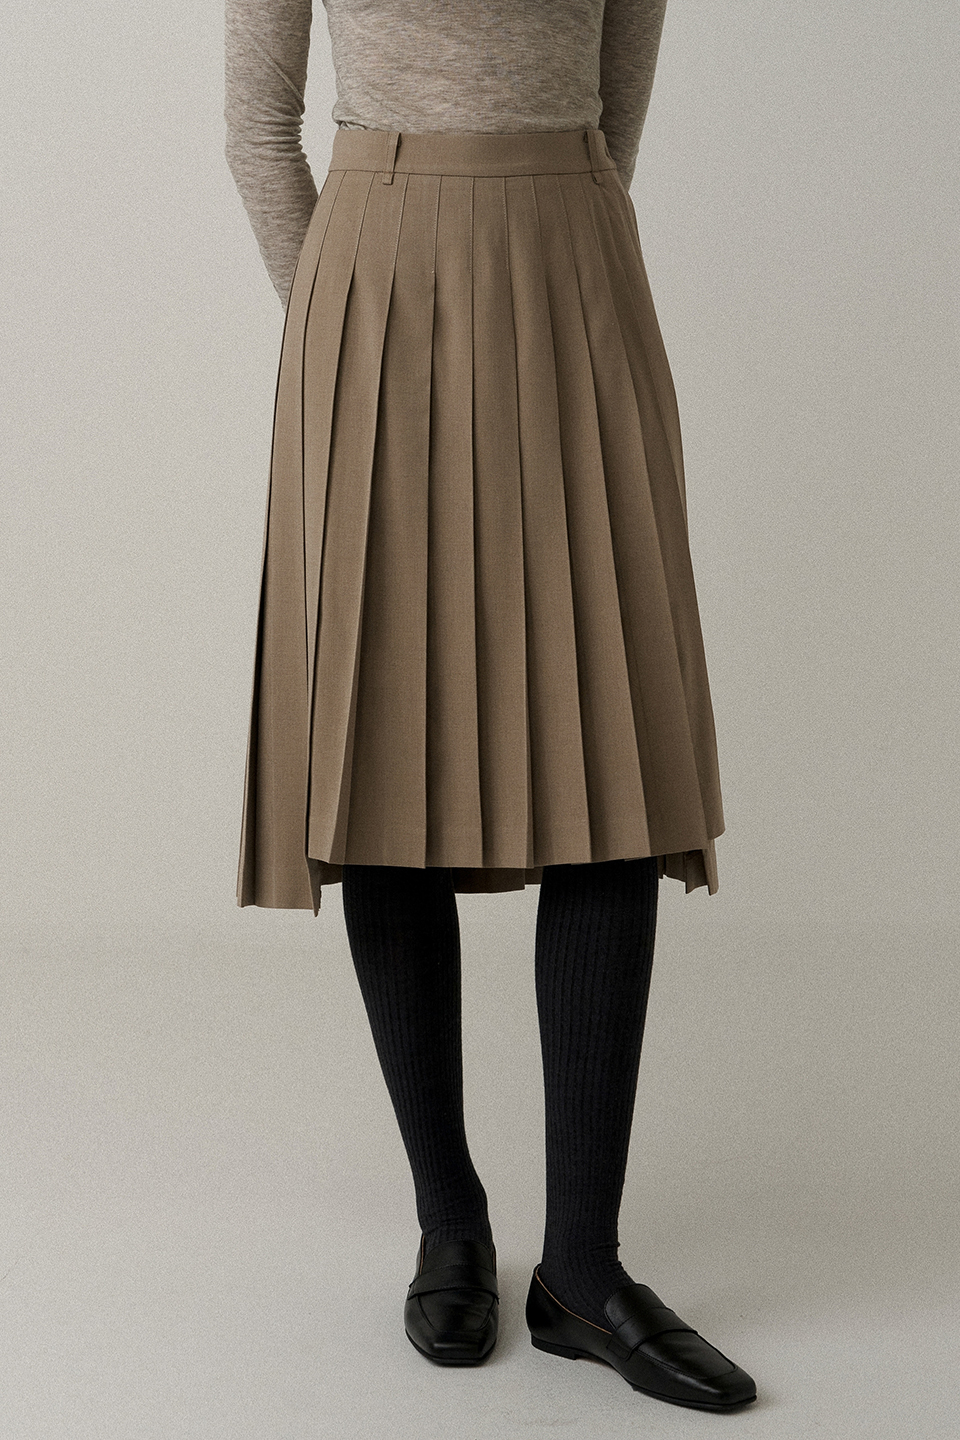 pleats wool skirt (beige)